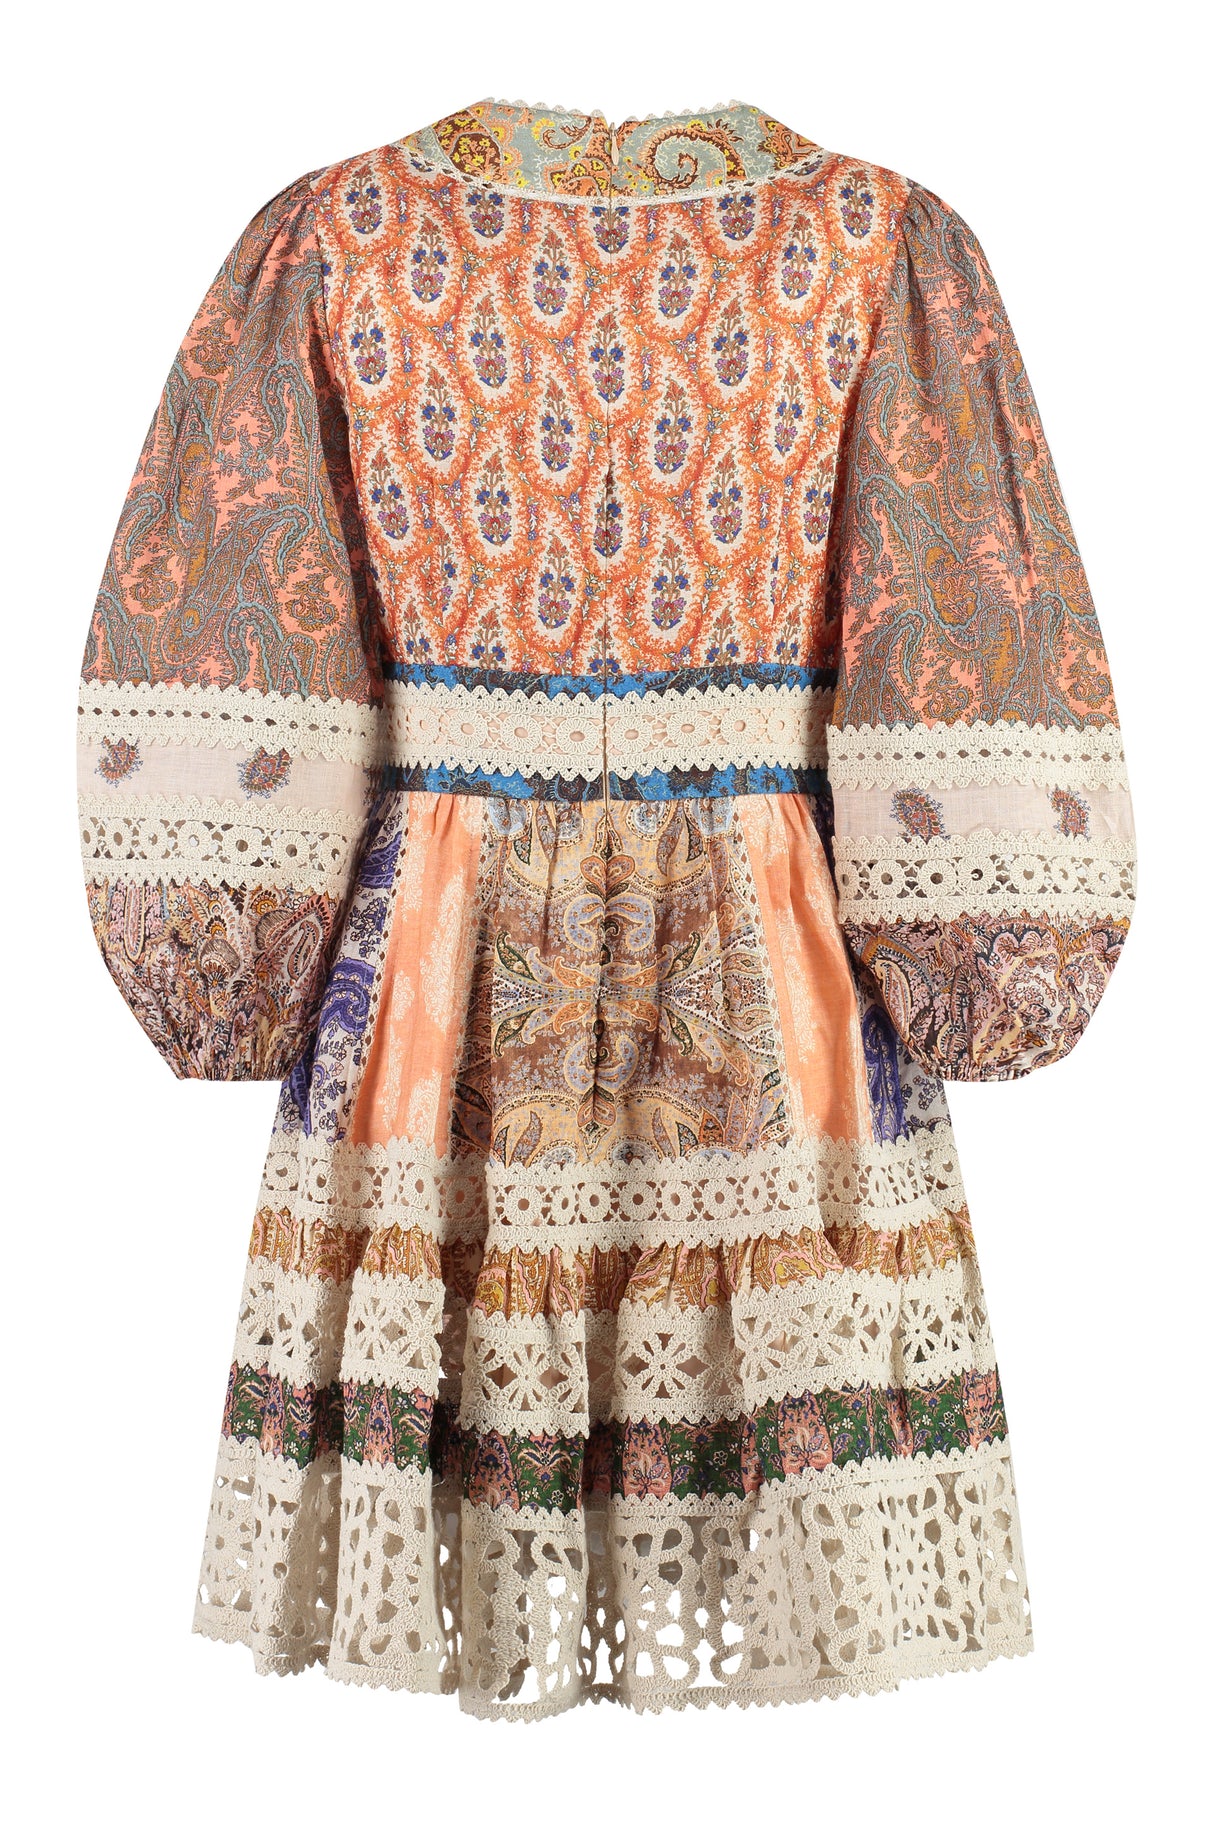 Bohemian Chic Mini Dress với Bộ Viền Đan và Mẫu Họa Tiết Paisley Toàn Thân